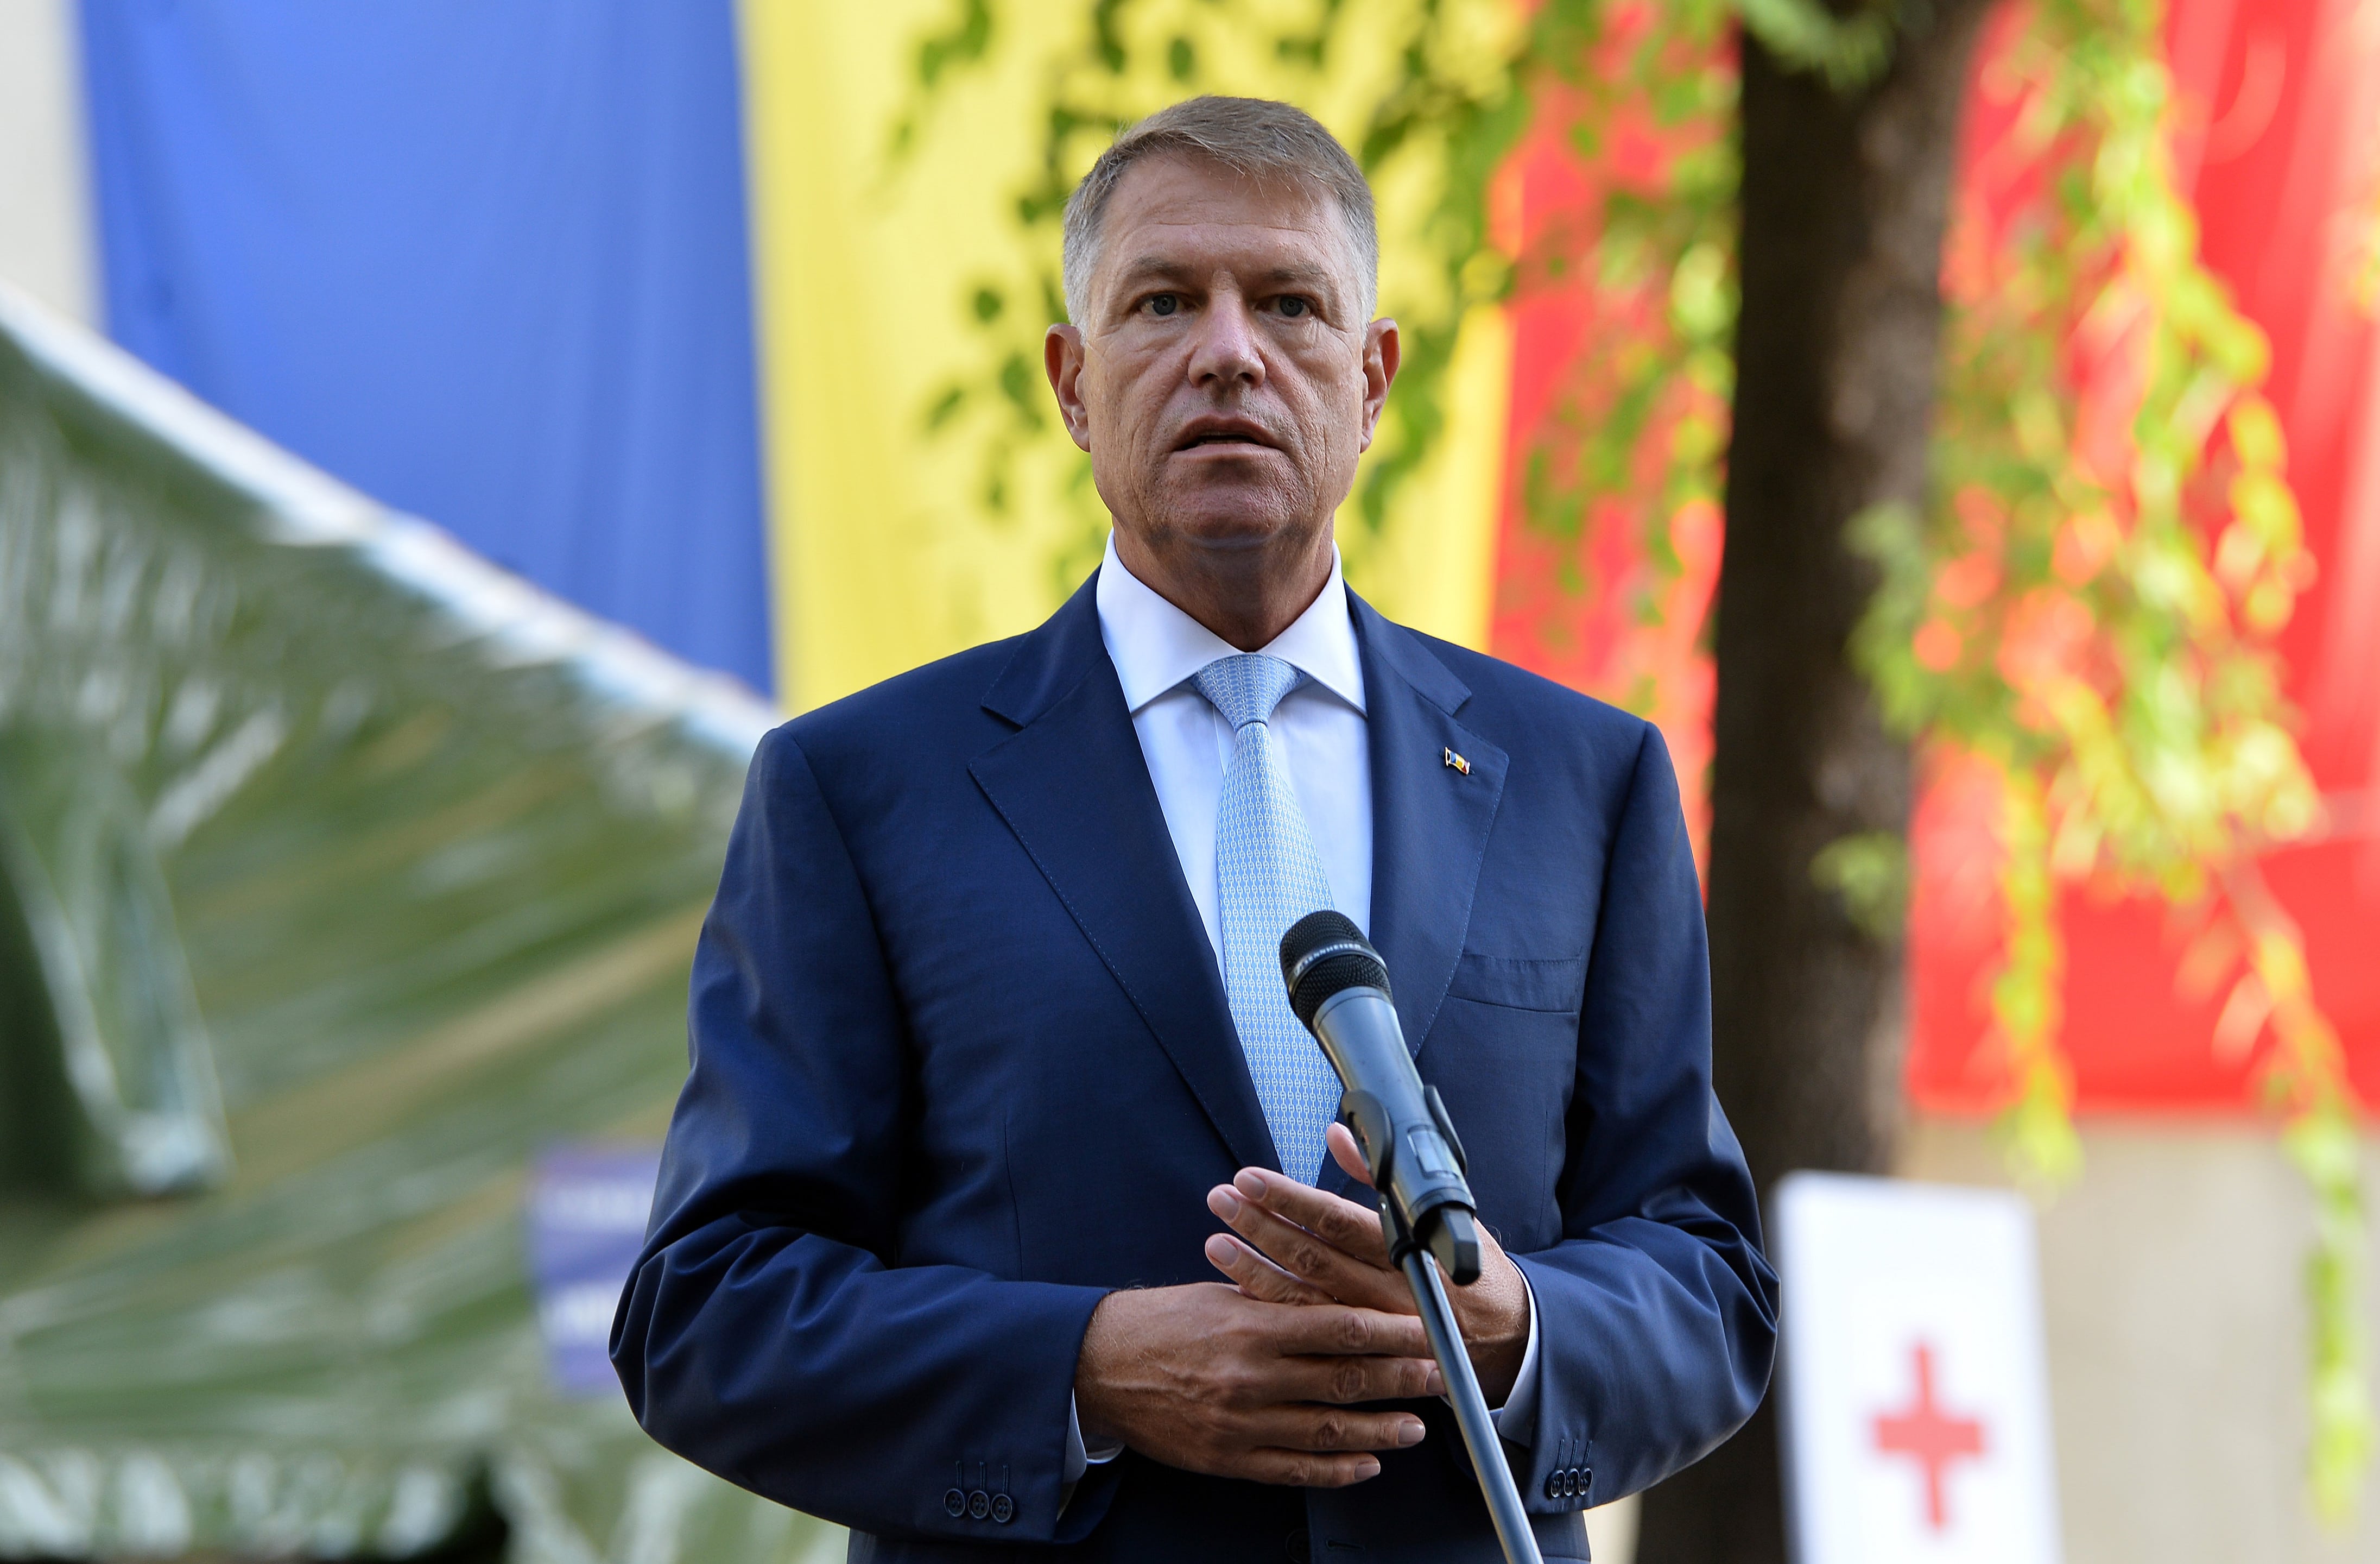 Iohannis intervine în dosarul ”10 august”: ”Solicit ministrului Justiției să explice public”